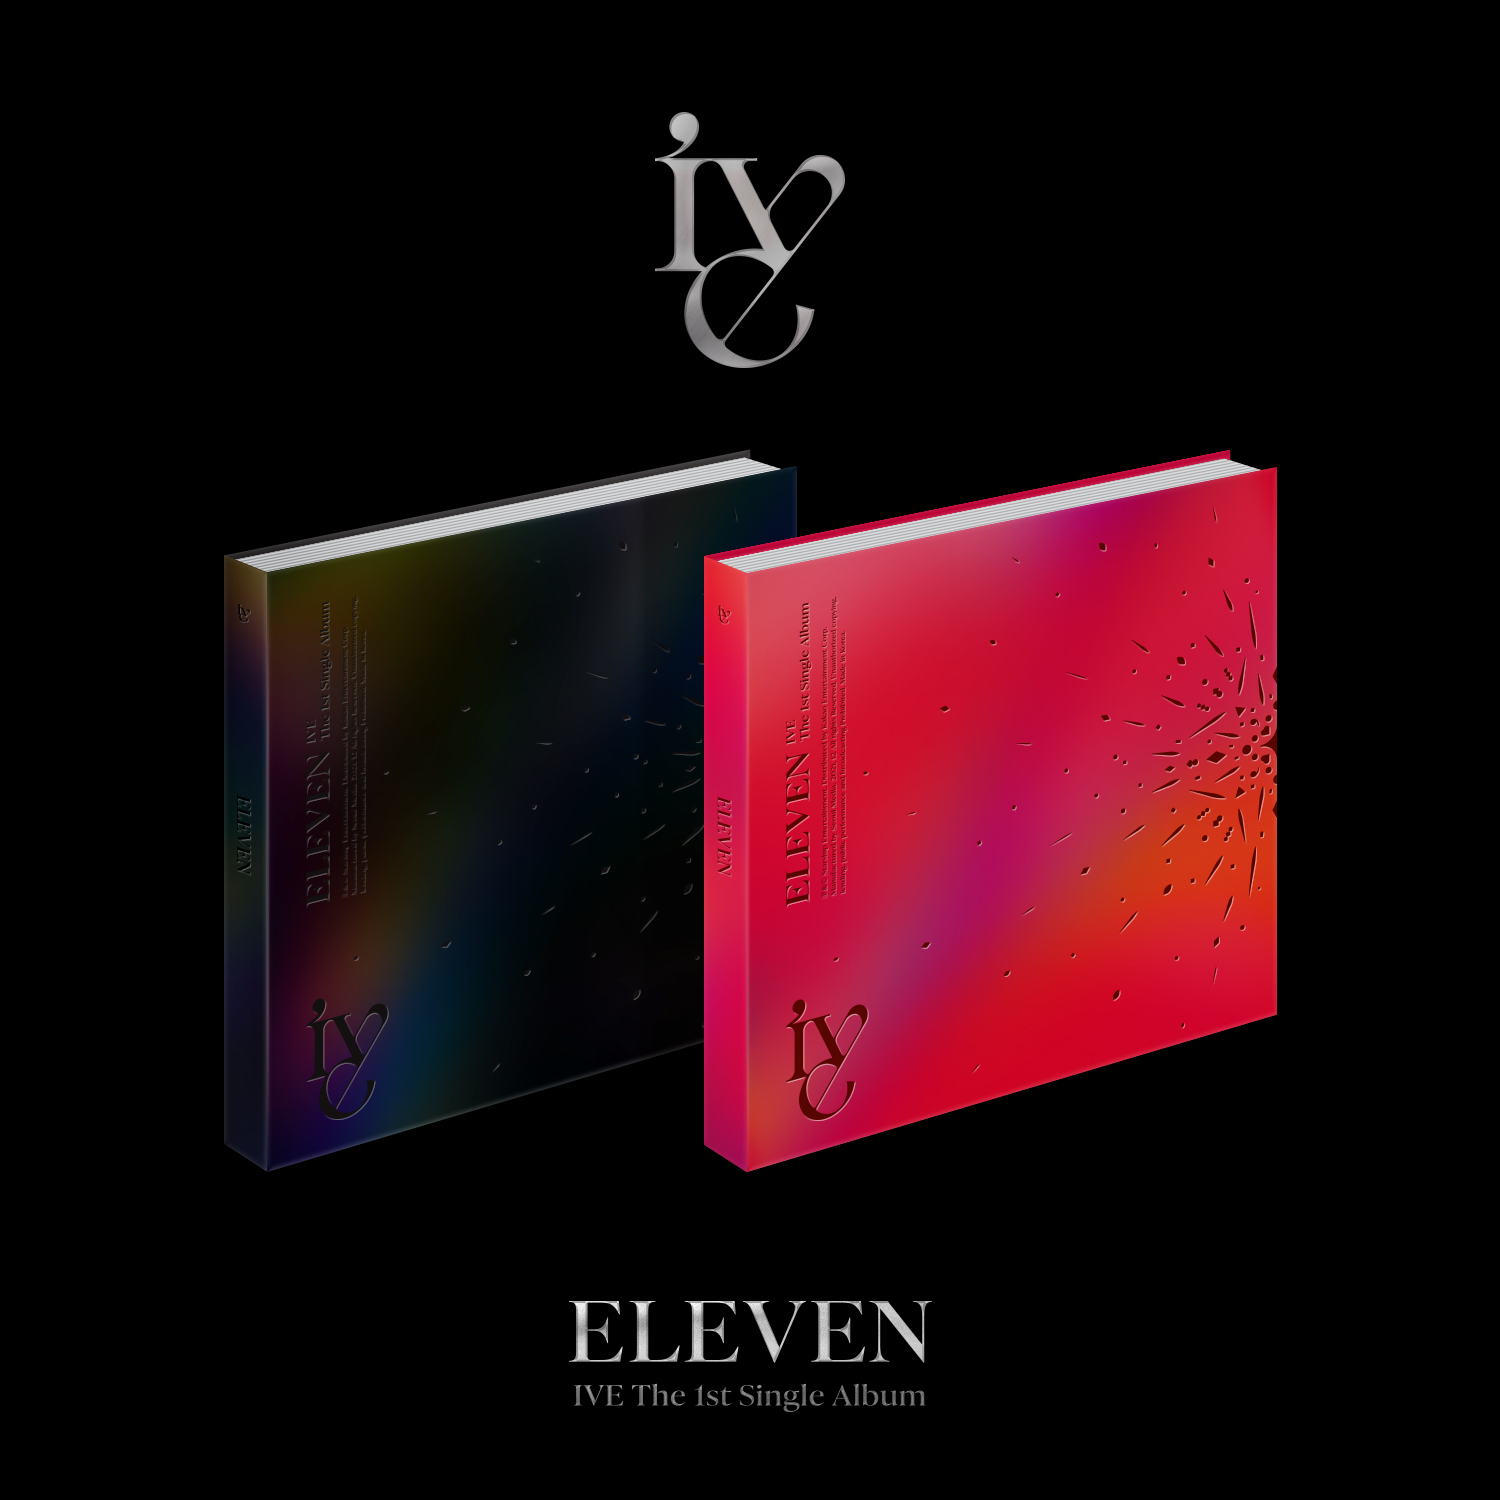 [全款 SP专-团子] [活动商品] IVE - The 1st 单曲专辑 [ELEVEN] (随机版本)_安宥真吧